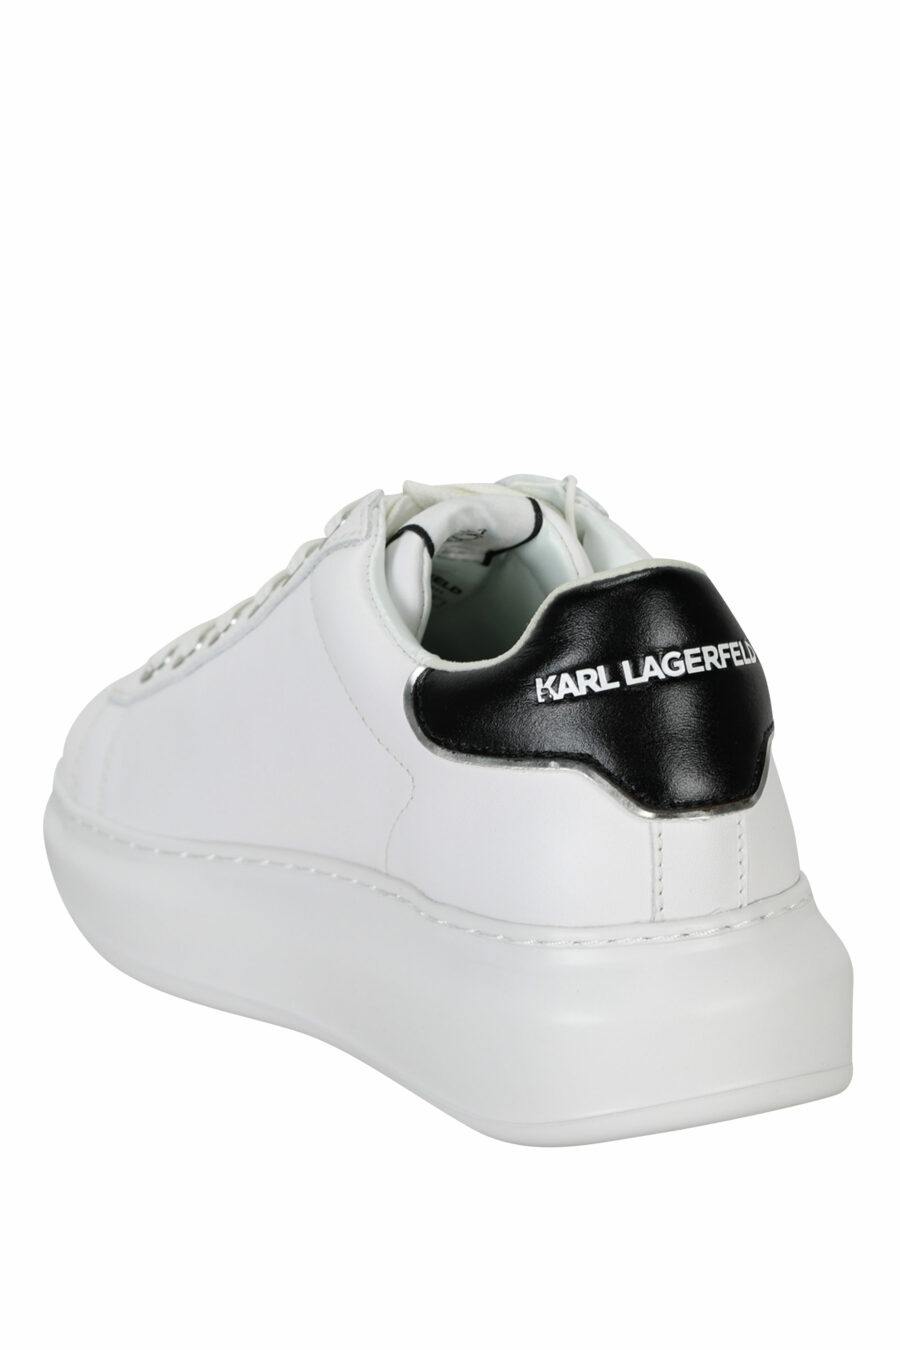 Zapatillas blancas "Kapri" con logo en goma y detalle negro - 5059529351020 3